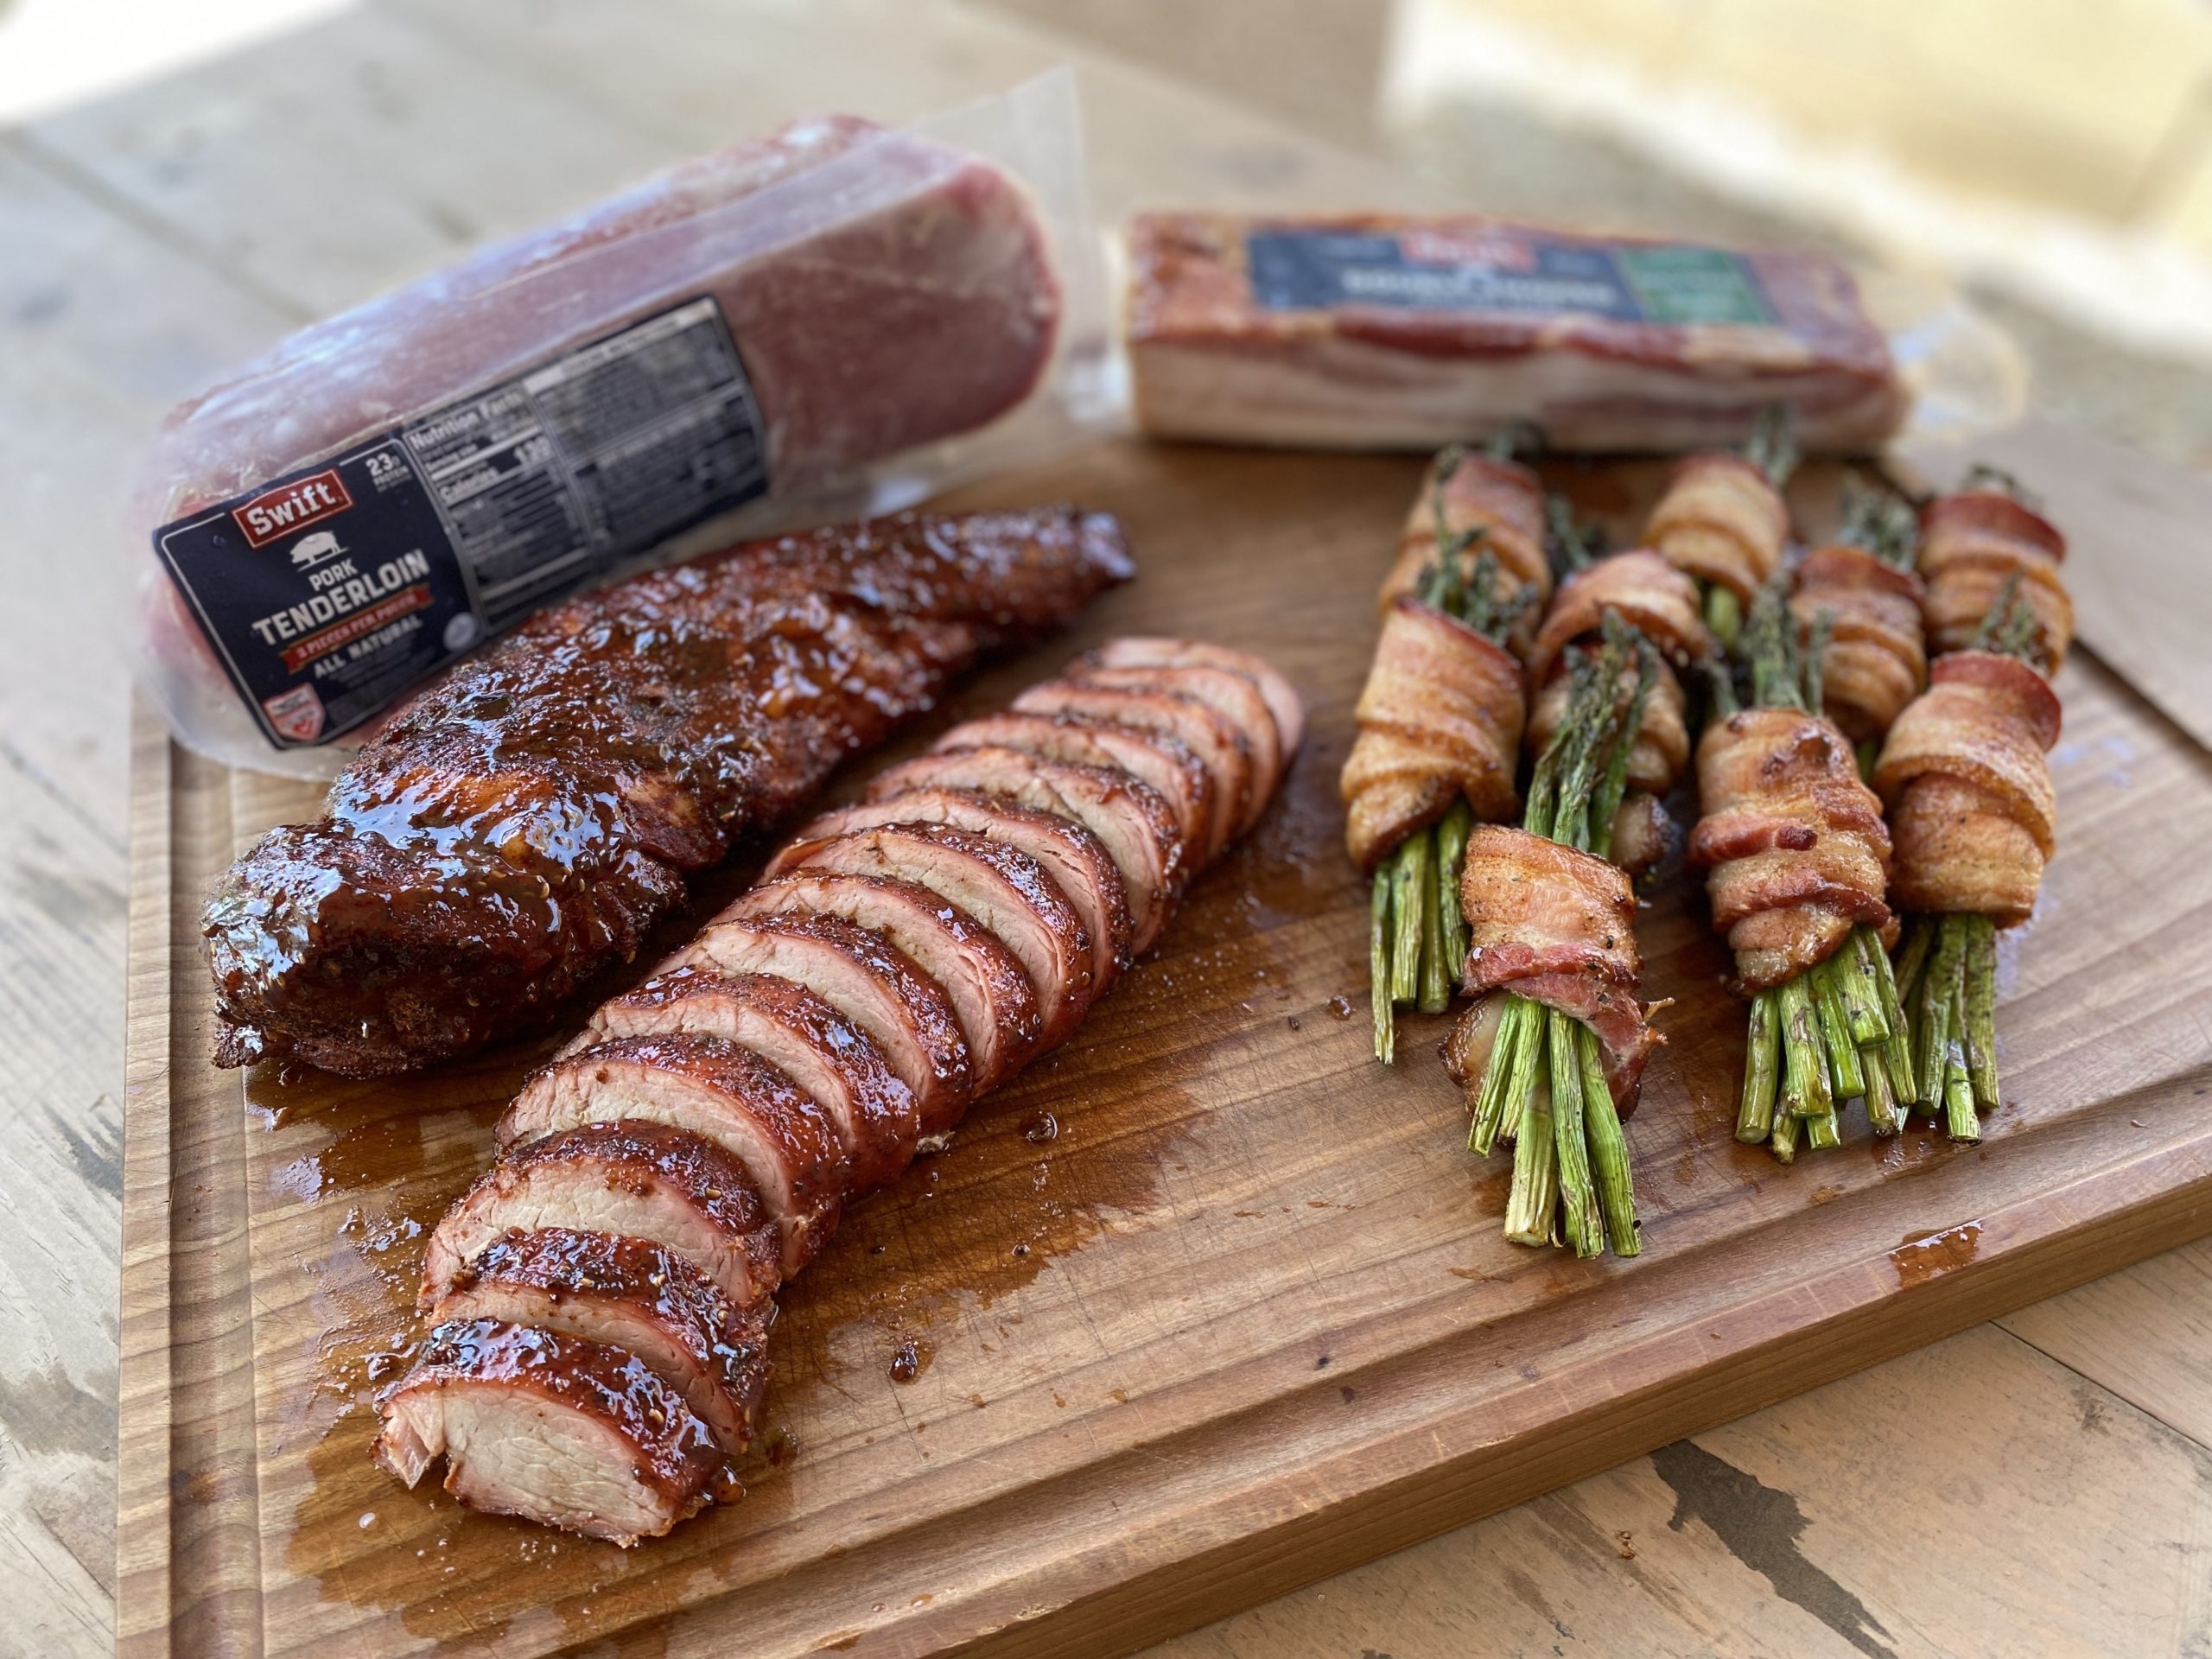 Evan’s Smoked Pork Tenderloin with Bacon-Wrapped Asparagus